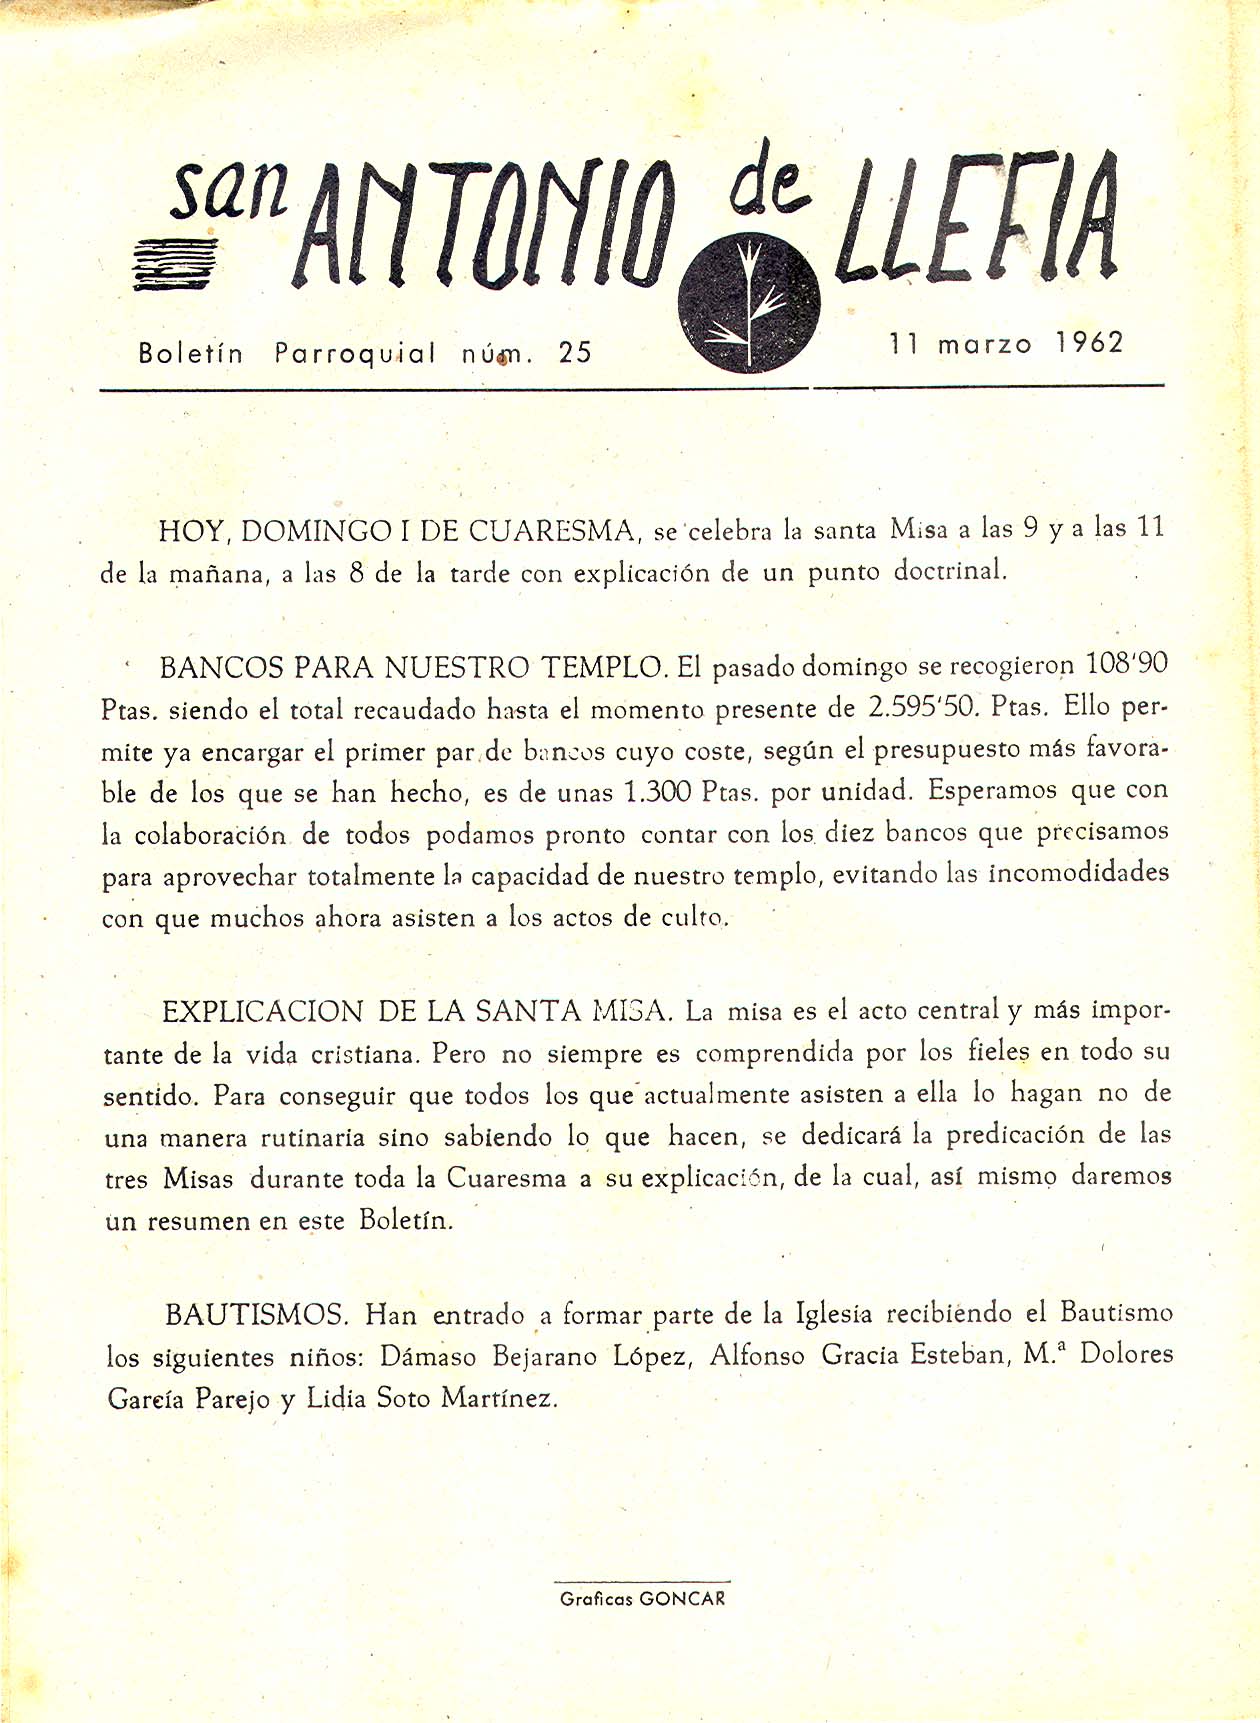 1962 Boletin parroquial nÃºm 25